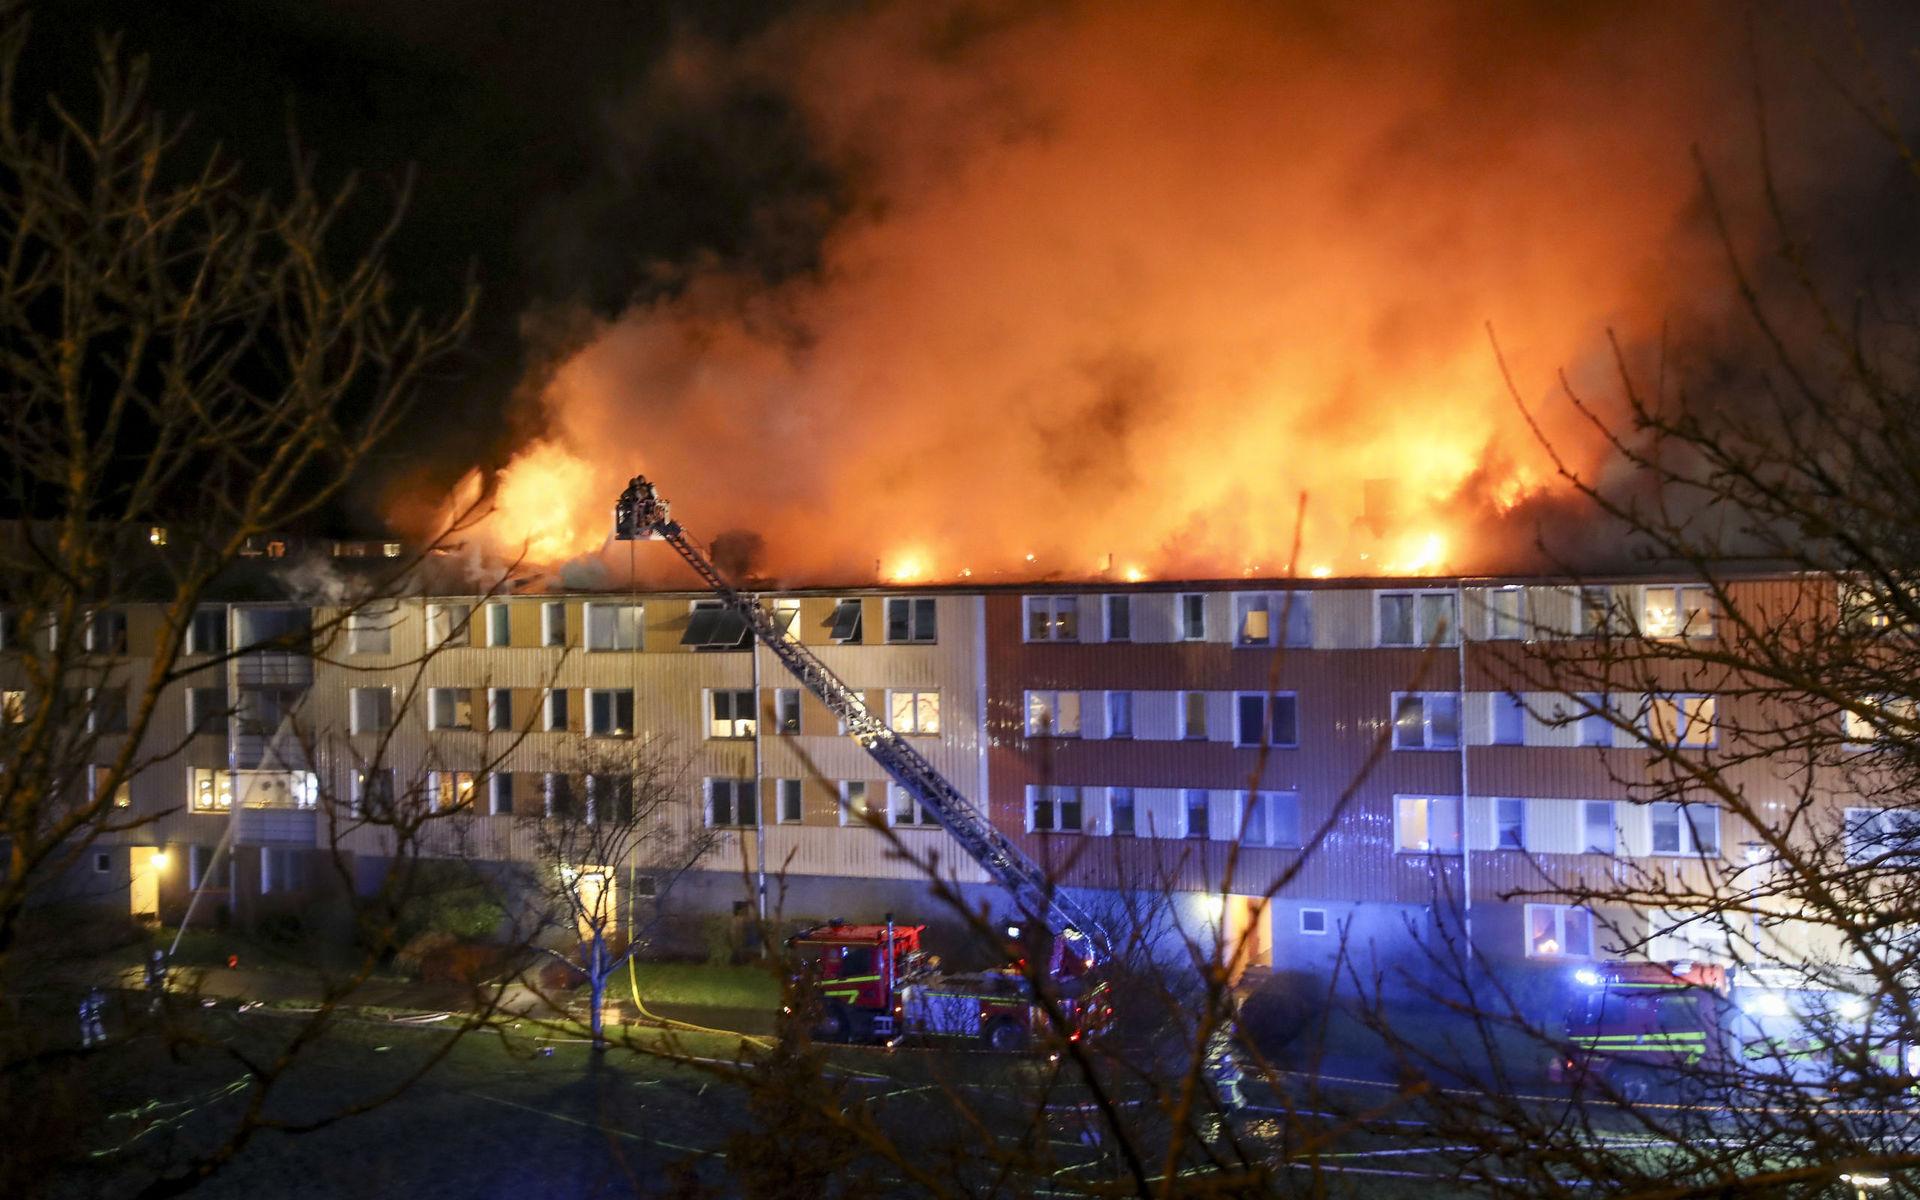 Storbranden i Frölunda ledde till att ett stort antal personer måste evakueras och flera fick föras till sjukhus.